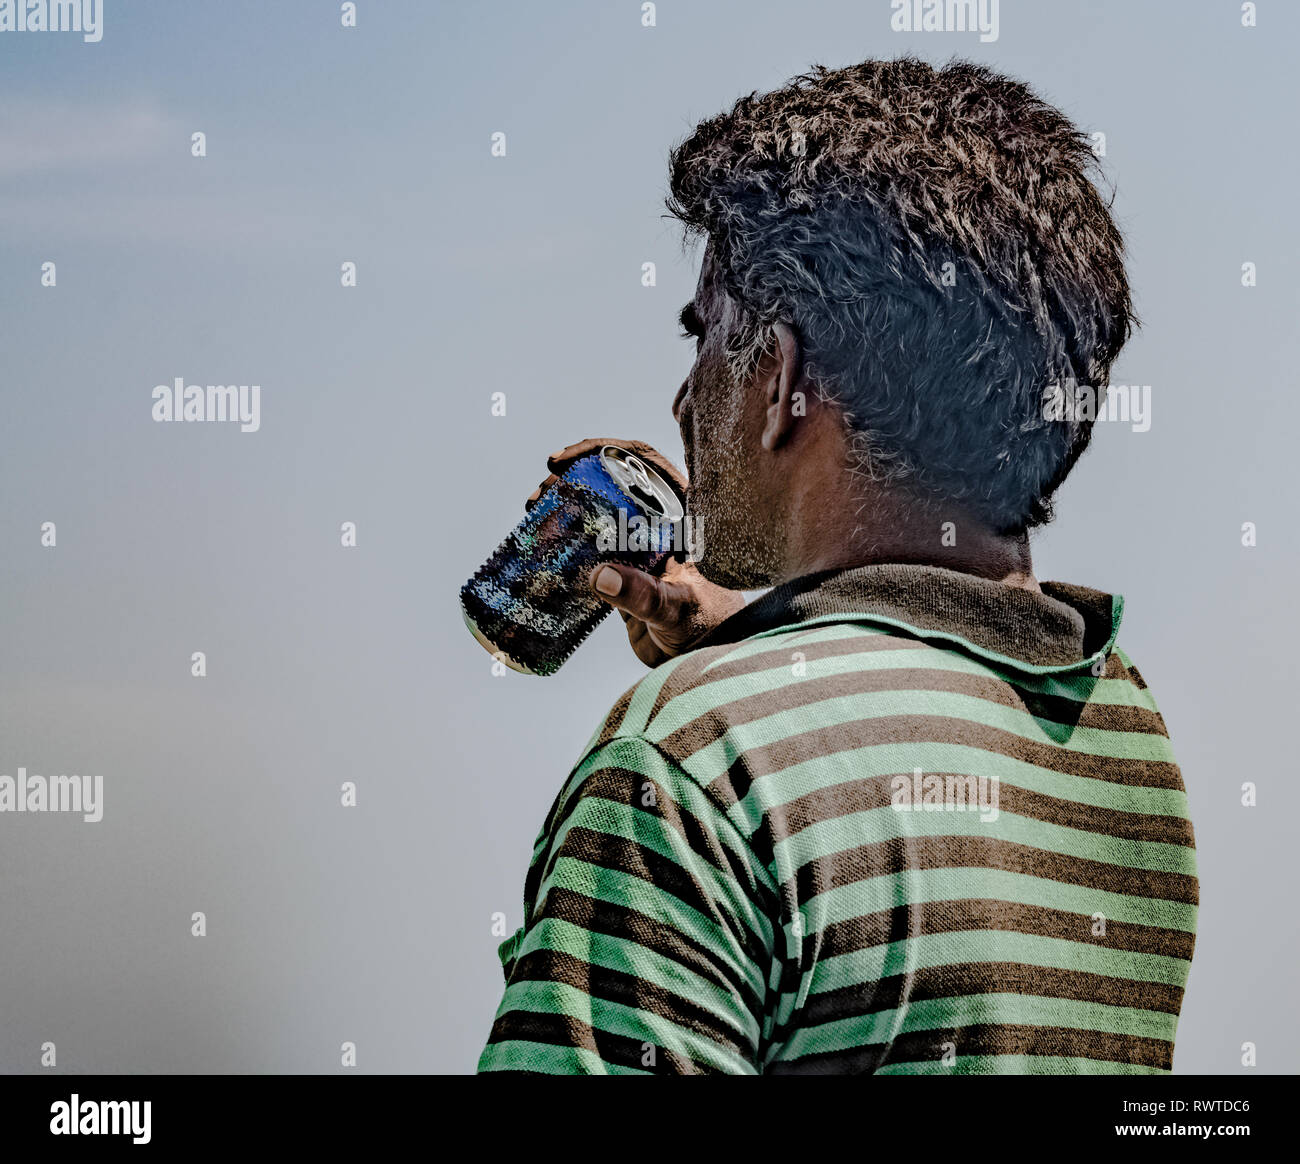 Im mittleren Alter Fischer der asiatischen Ursprungs, das Tragen von gestreiften T-Shirt ist erschöpft und Abschrecken, seinen Durst durch das Trinken von Bier/kaltes Getränk an einem heißen sonnigen Tag Stockfoto